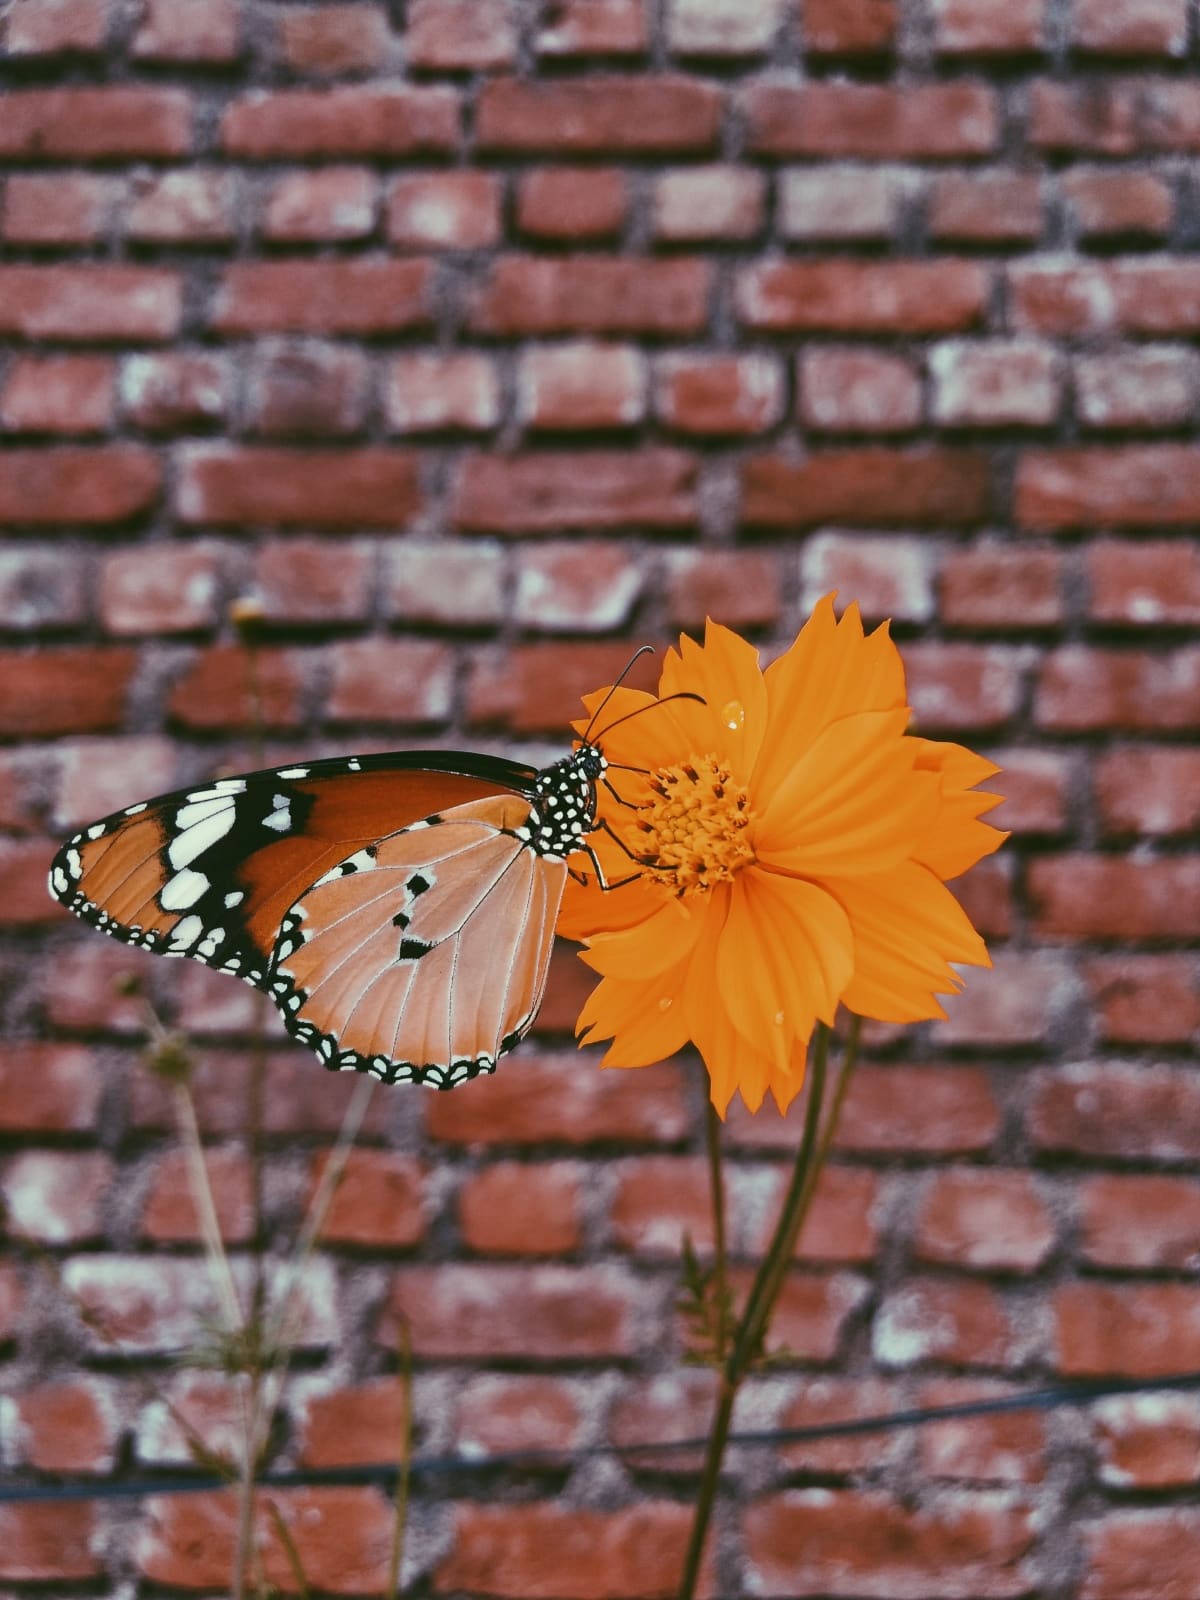 Butterfly in a flower garden